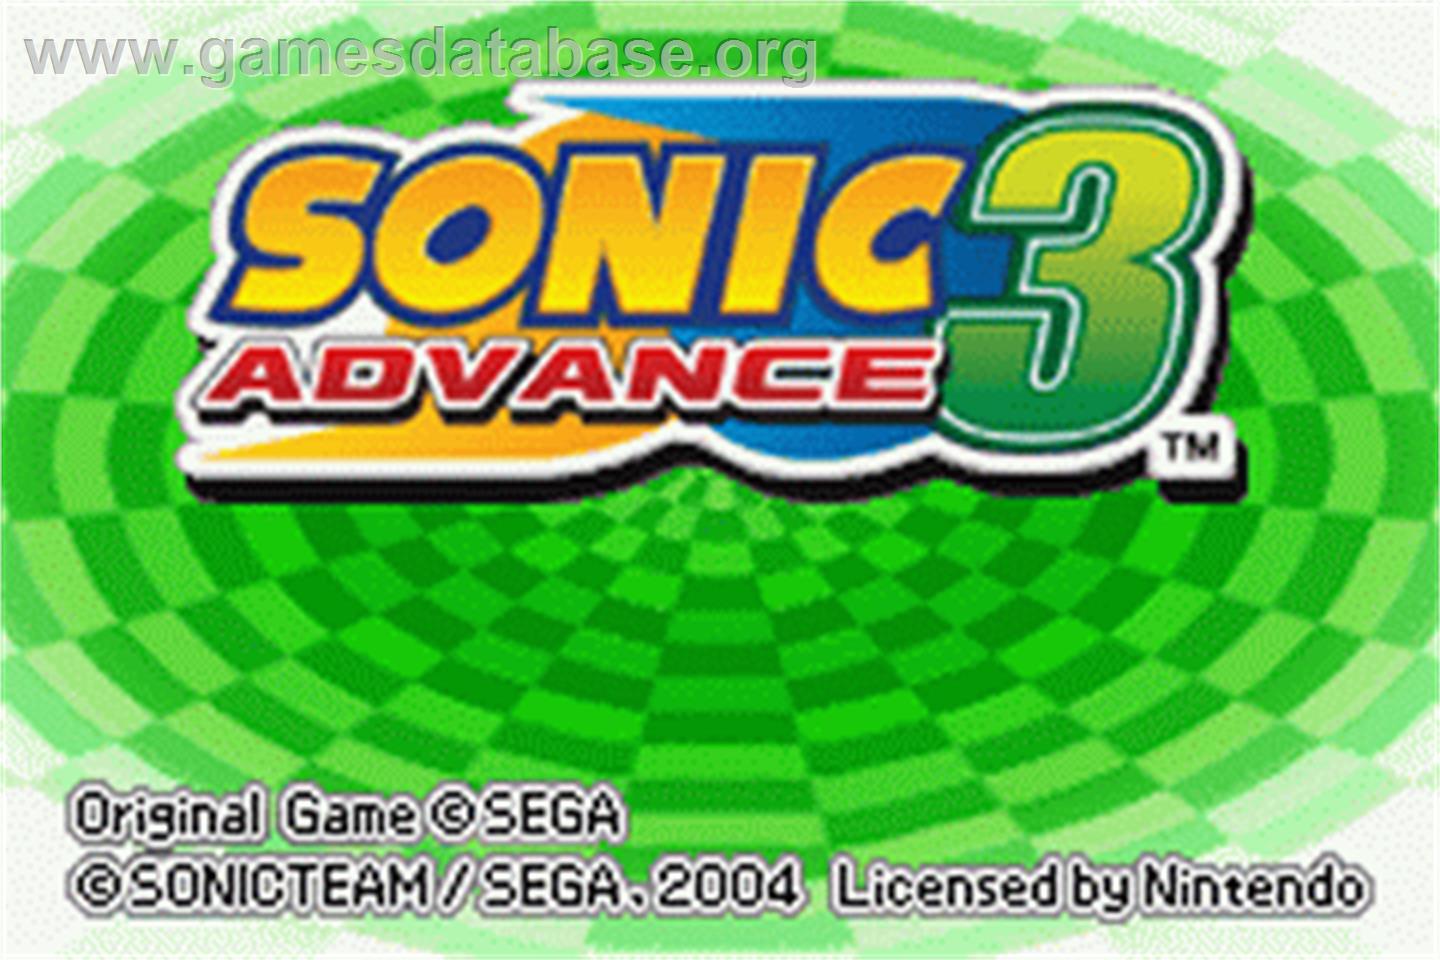 Sonic Advance 3 - Nintendo Game Boy Advance - Artwork - Title Screen